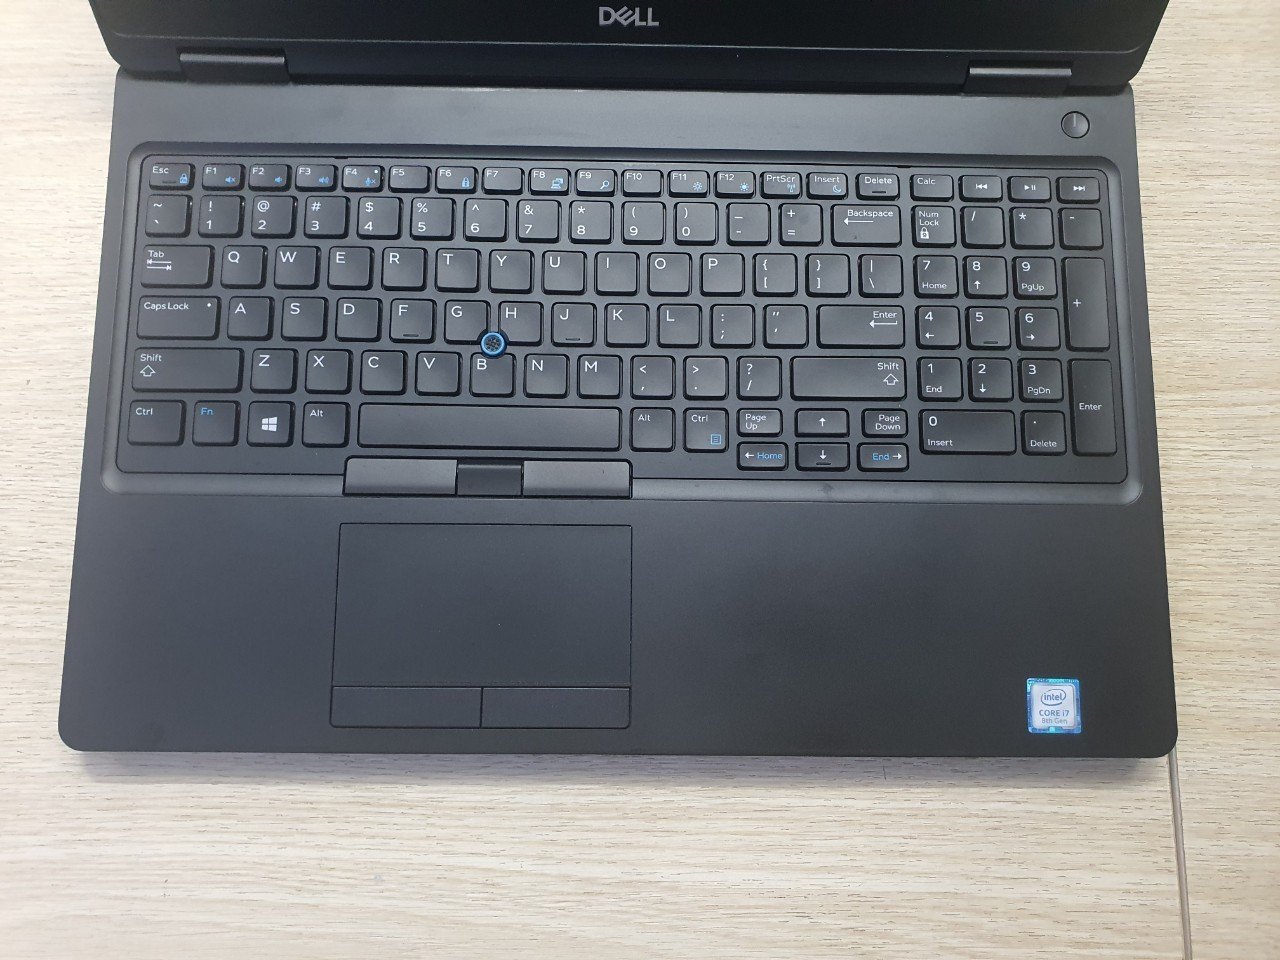 Lê Nguyễn PC - Địa Chỉ Tin Cậy Cho Laptop Cũ Giá Rẻ Tại Bình Dương – Laptop Dell i5/i7 chỉ từ 4 - Ảnh 2